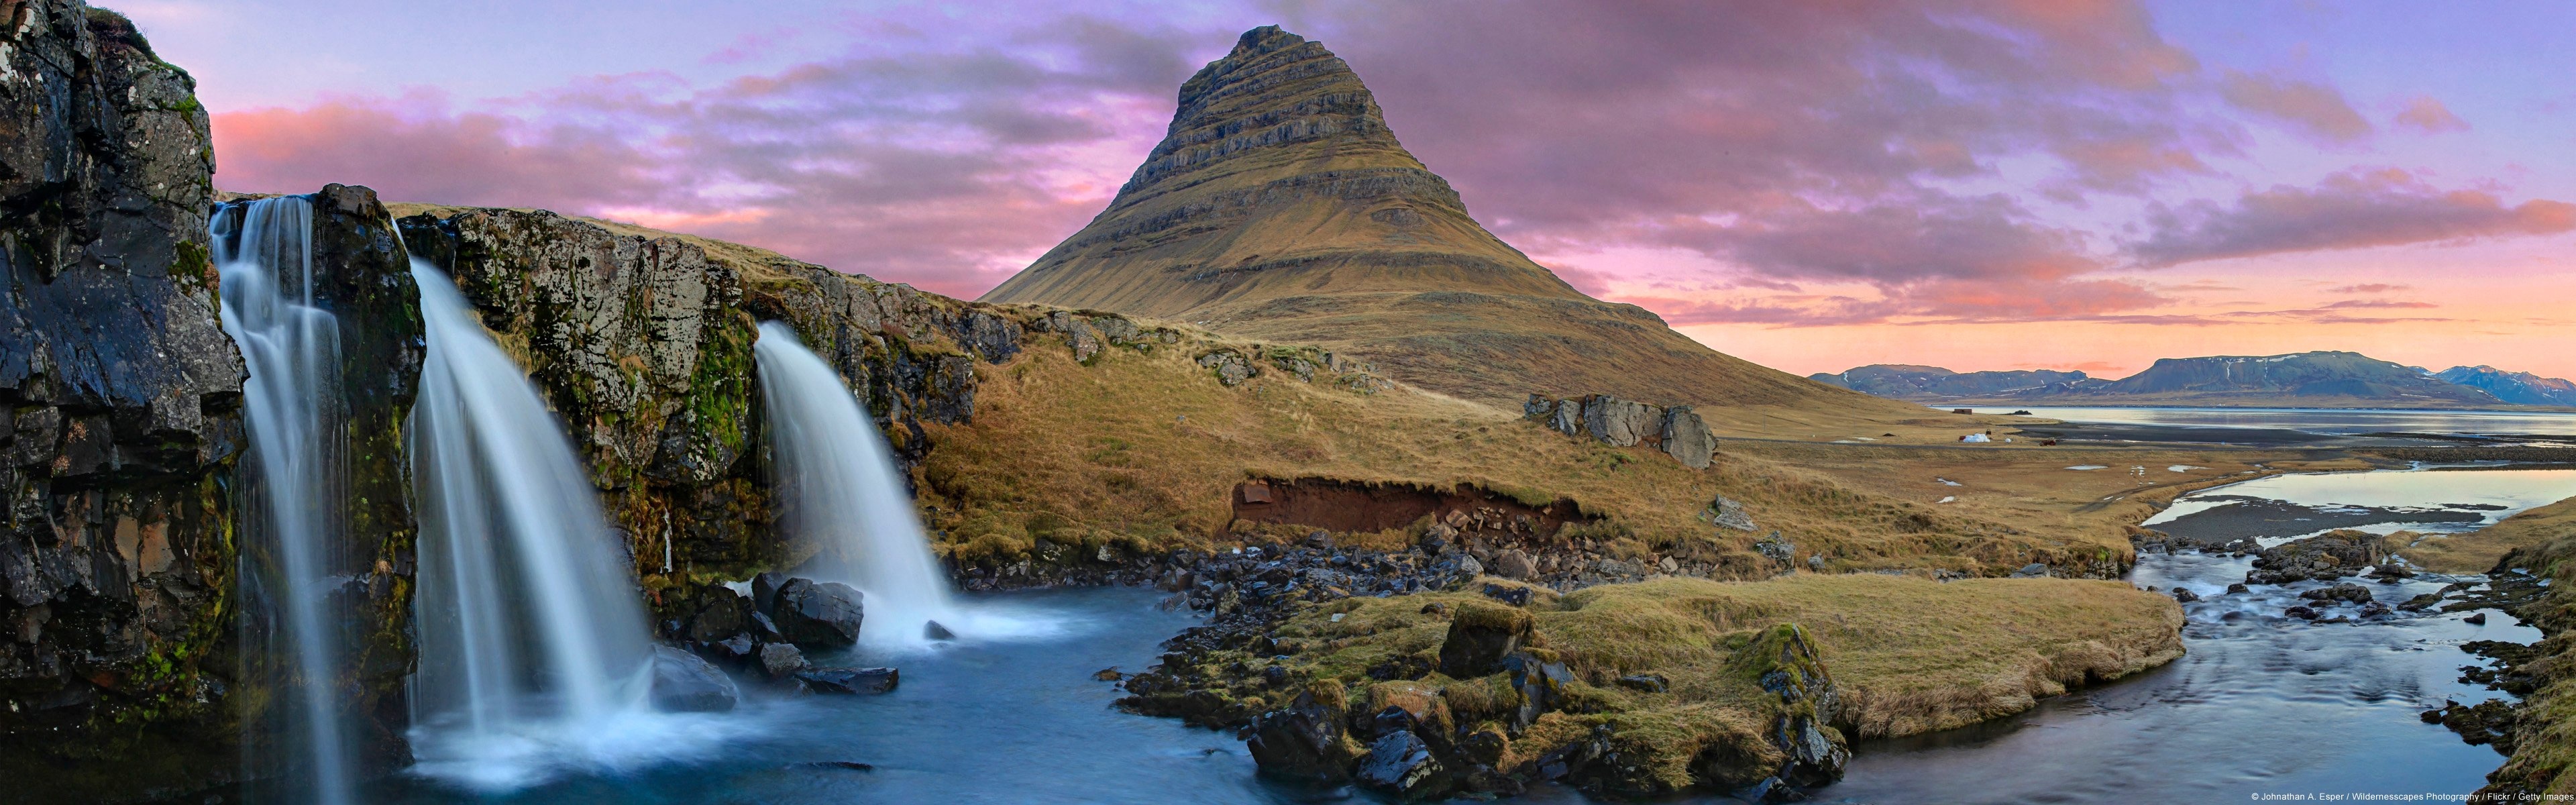 Kirkjufell, Iceland, Alienware wallpaper, Surreal landscape, 3840x1200 Dual Screen Desktop